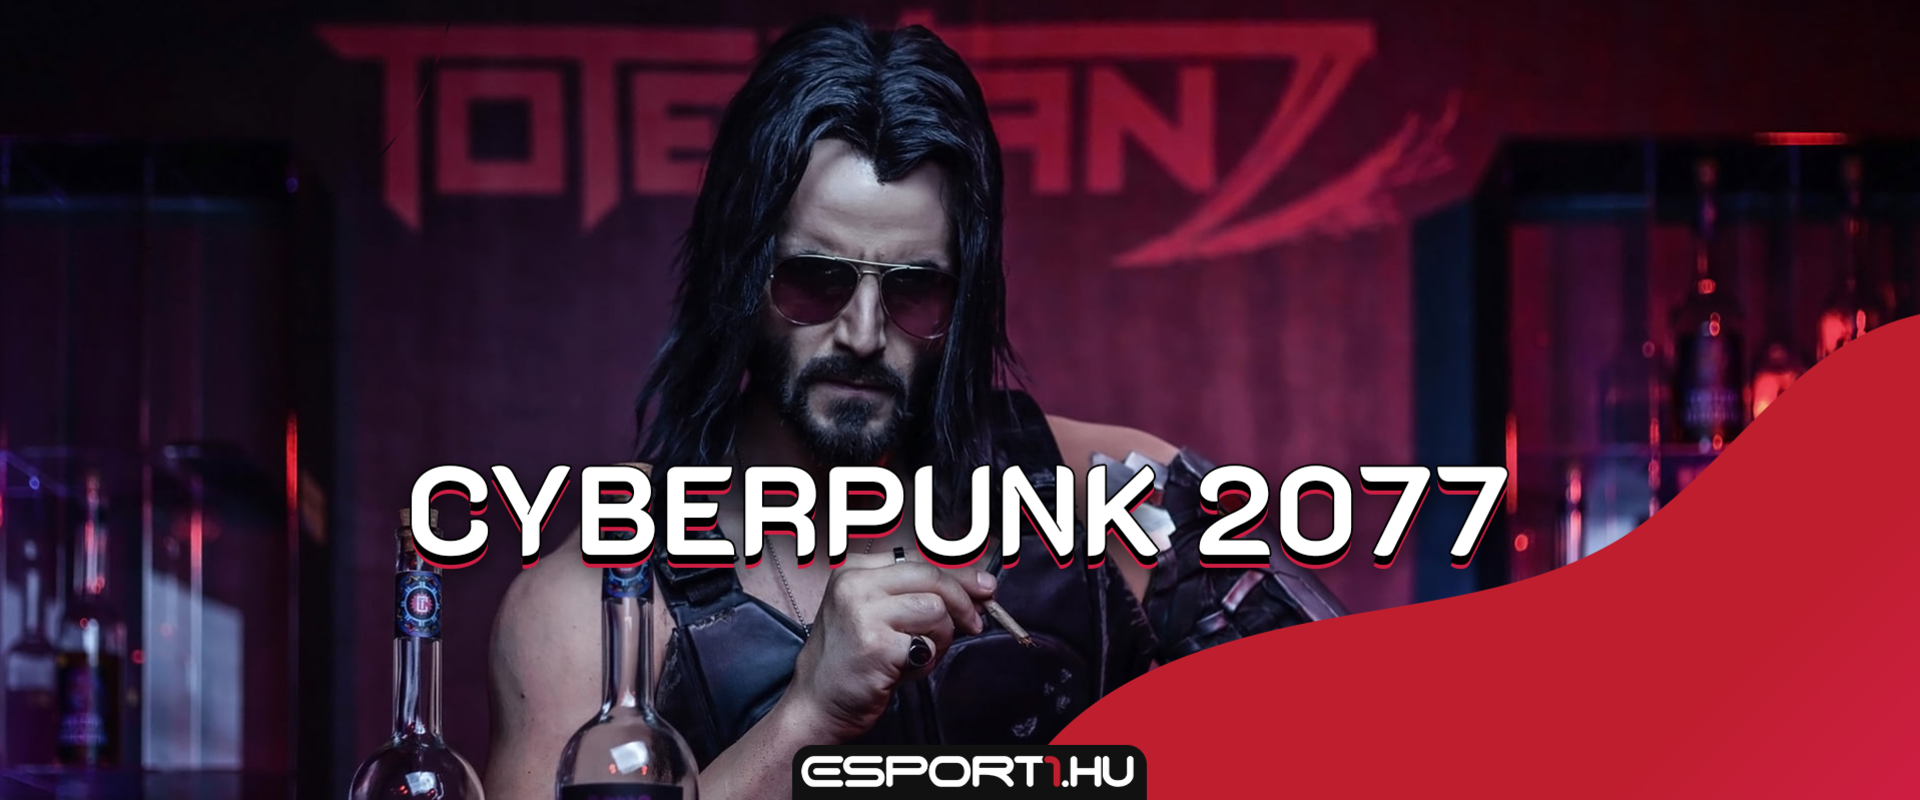 Iparági pletykák szerint két nappal a megjelenés előtt már előtölthető a Cyberpunk 2077